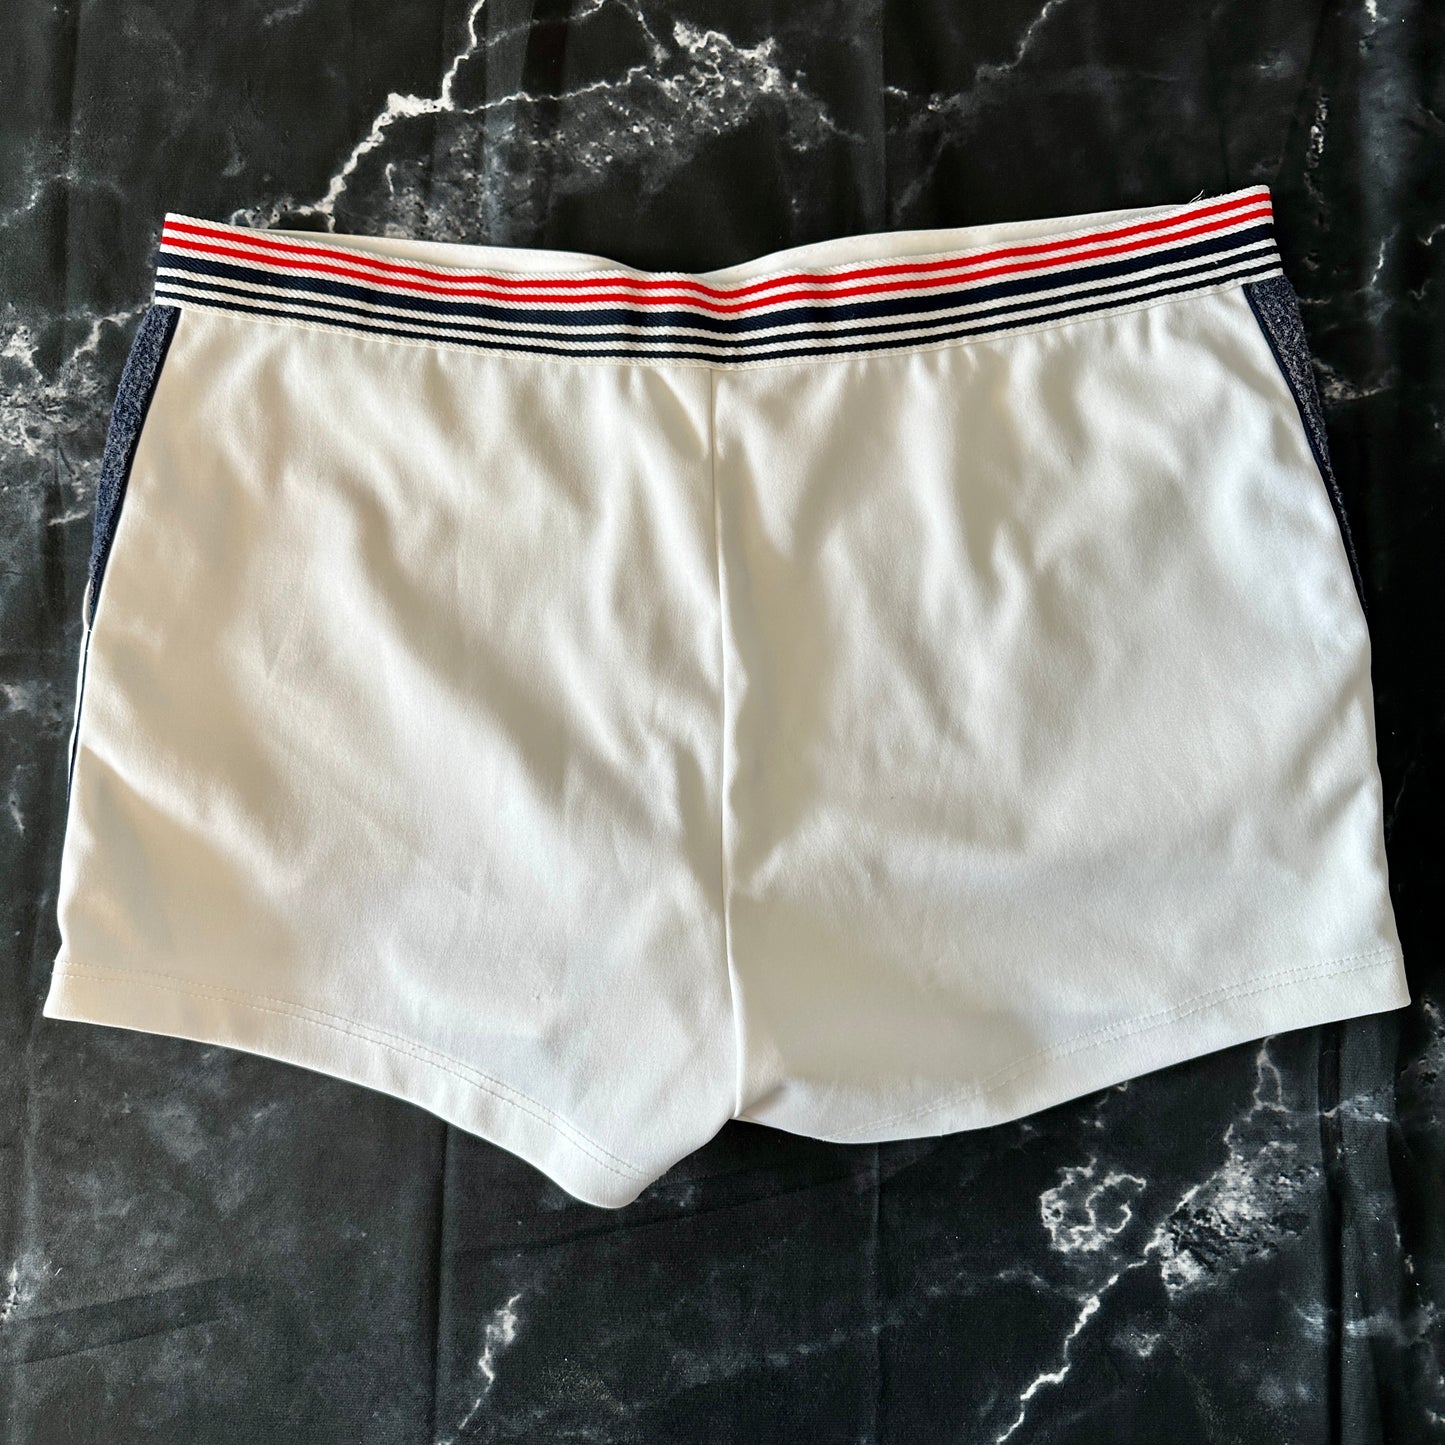 anba 80s Tennis Shorts - XL - Made in Austria